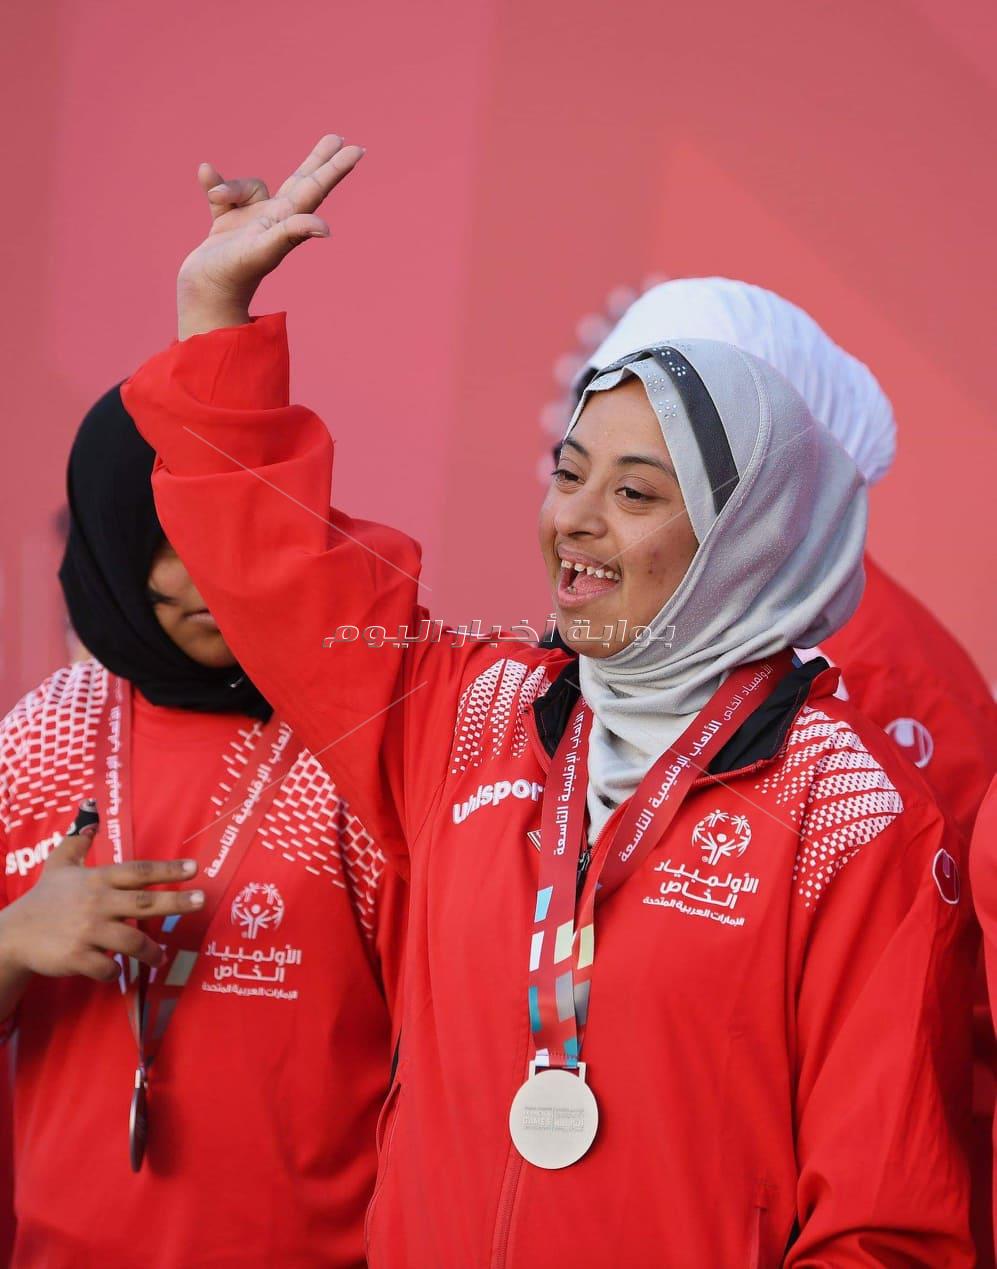 أكبر مشاركة نسائية "مصرية "بالألعاب العالمية للاولمبياد الخاص بأبو ظبى 2019